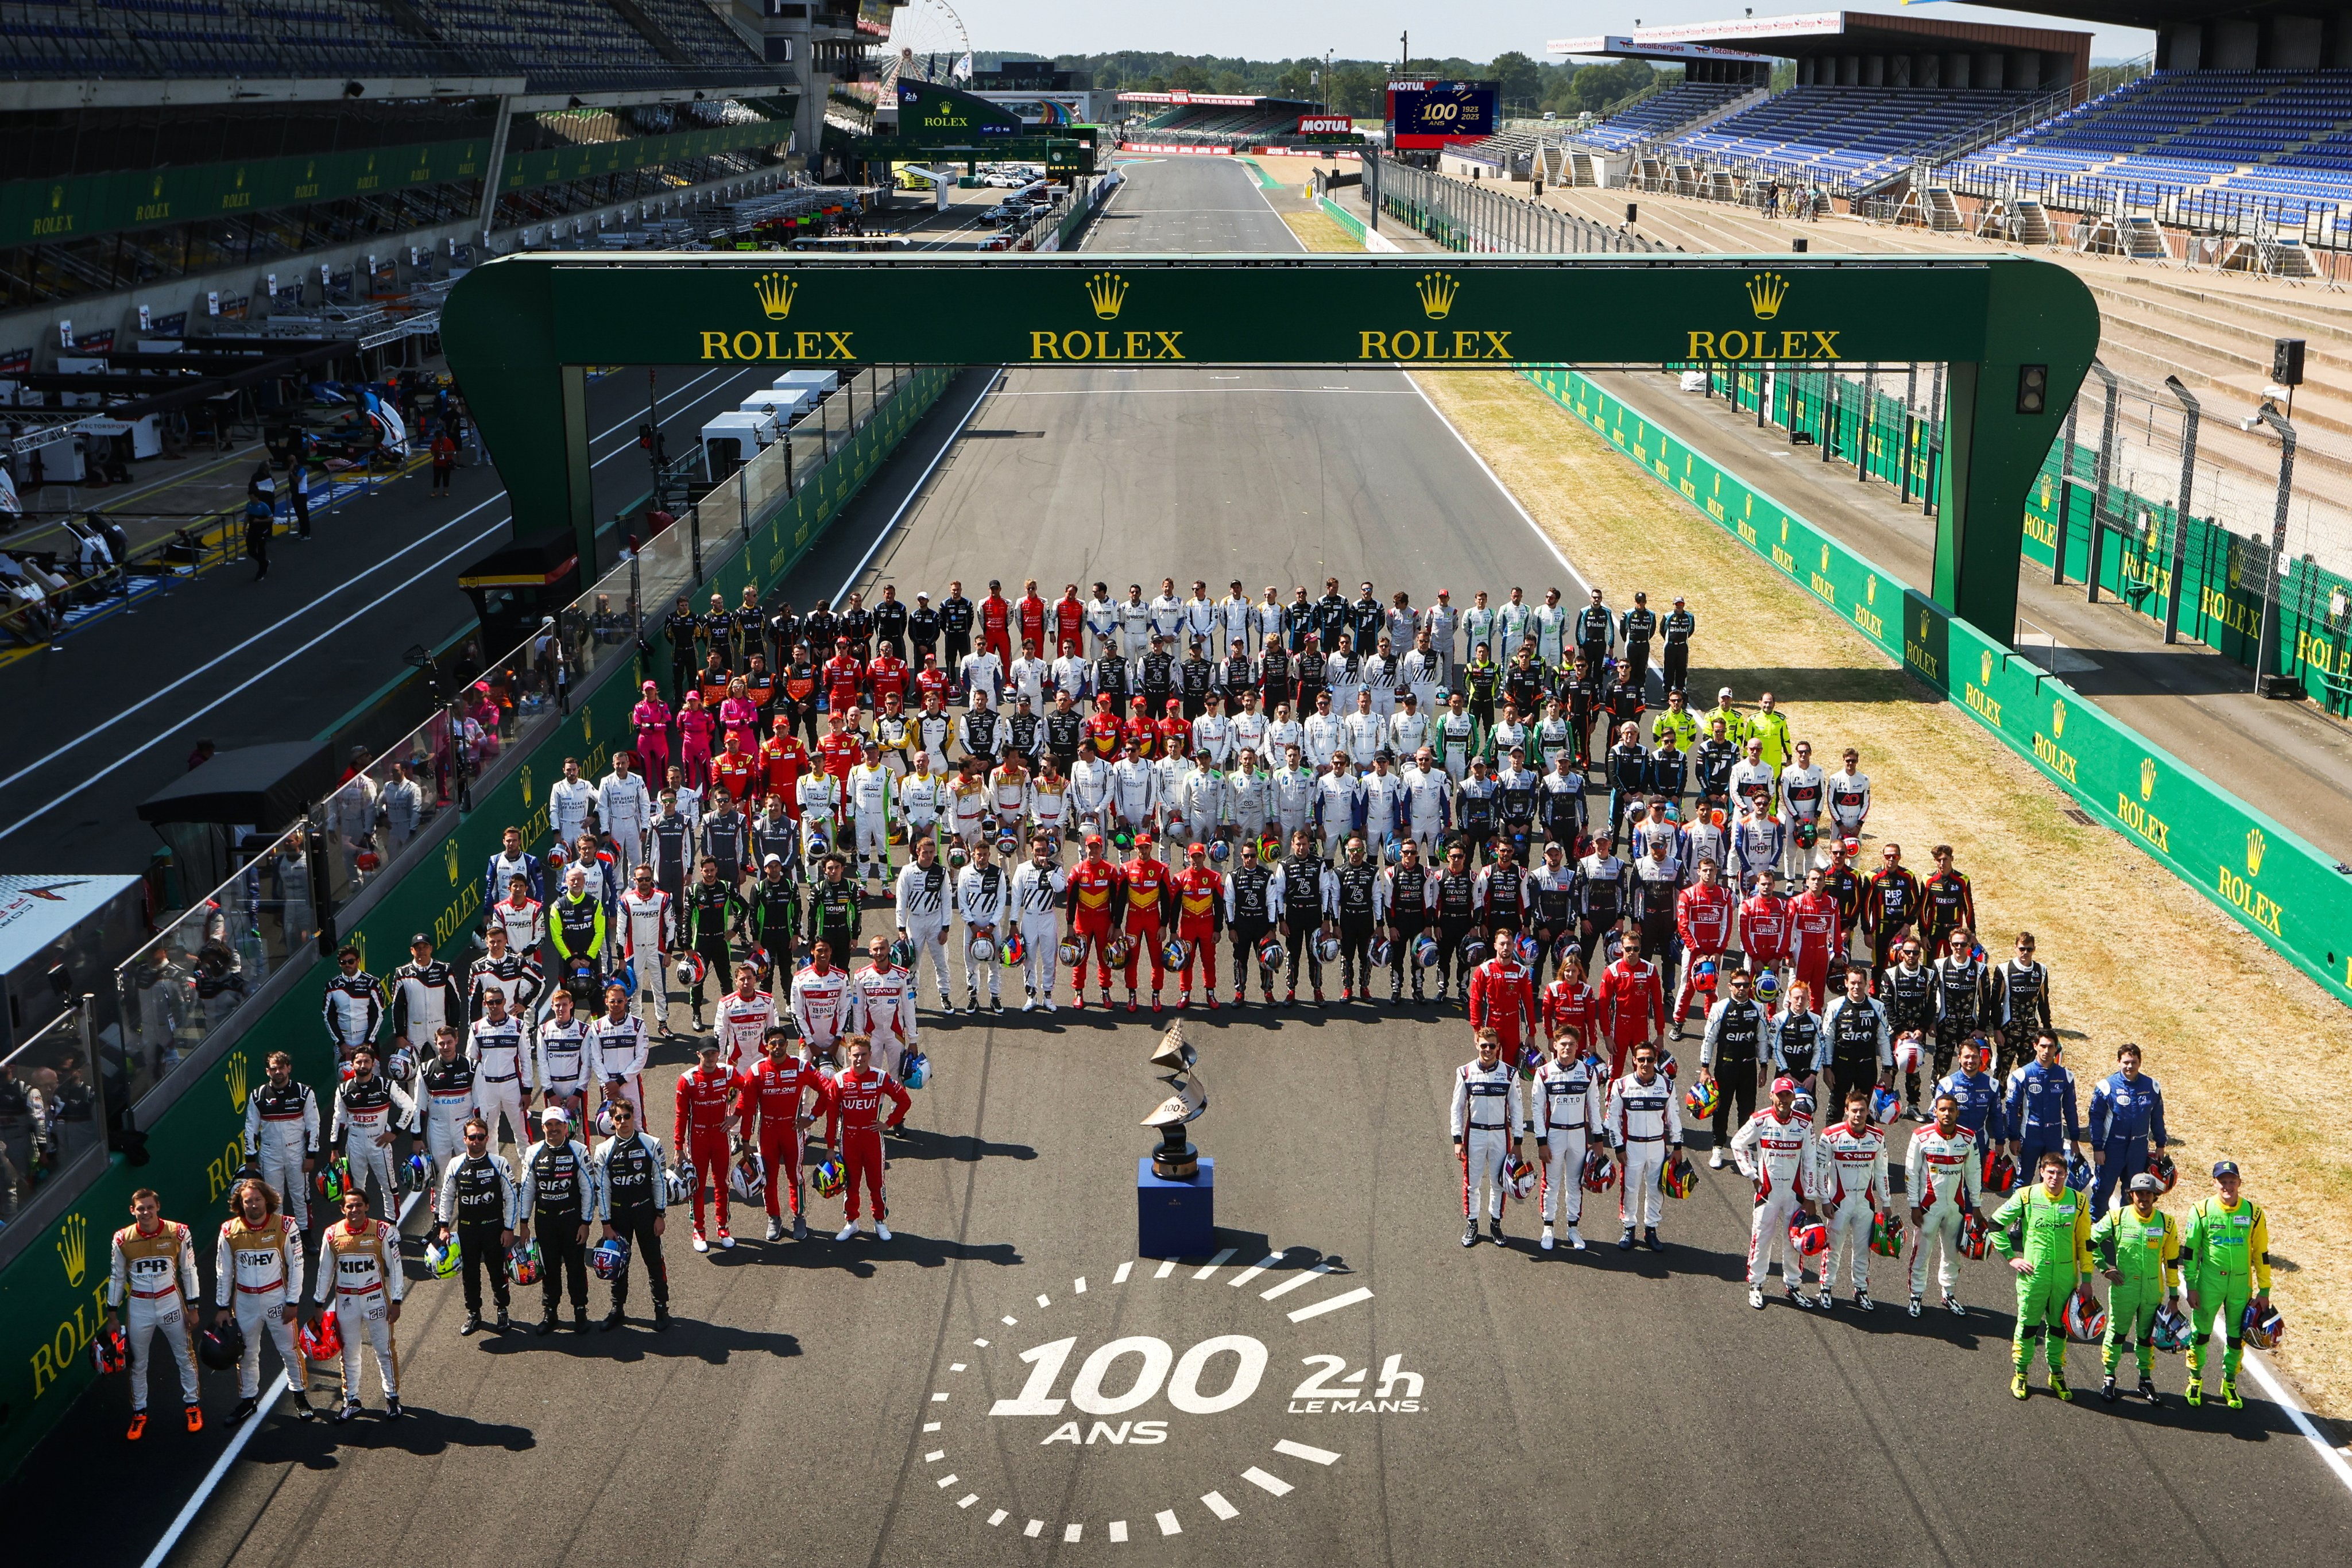 Le Mans, 100 anos: a corrida mais tradicional do mundo - O Hoje.com